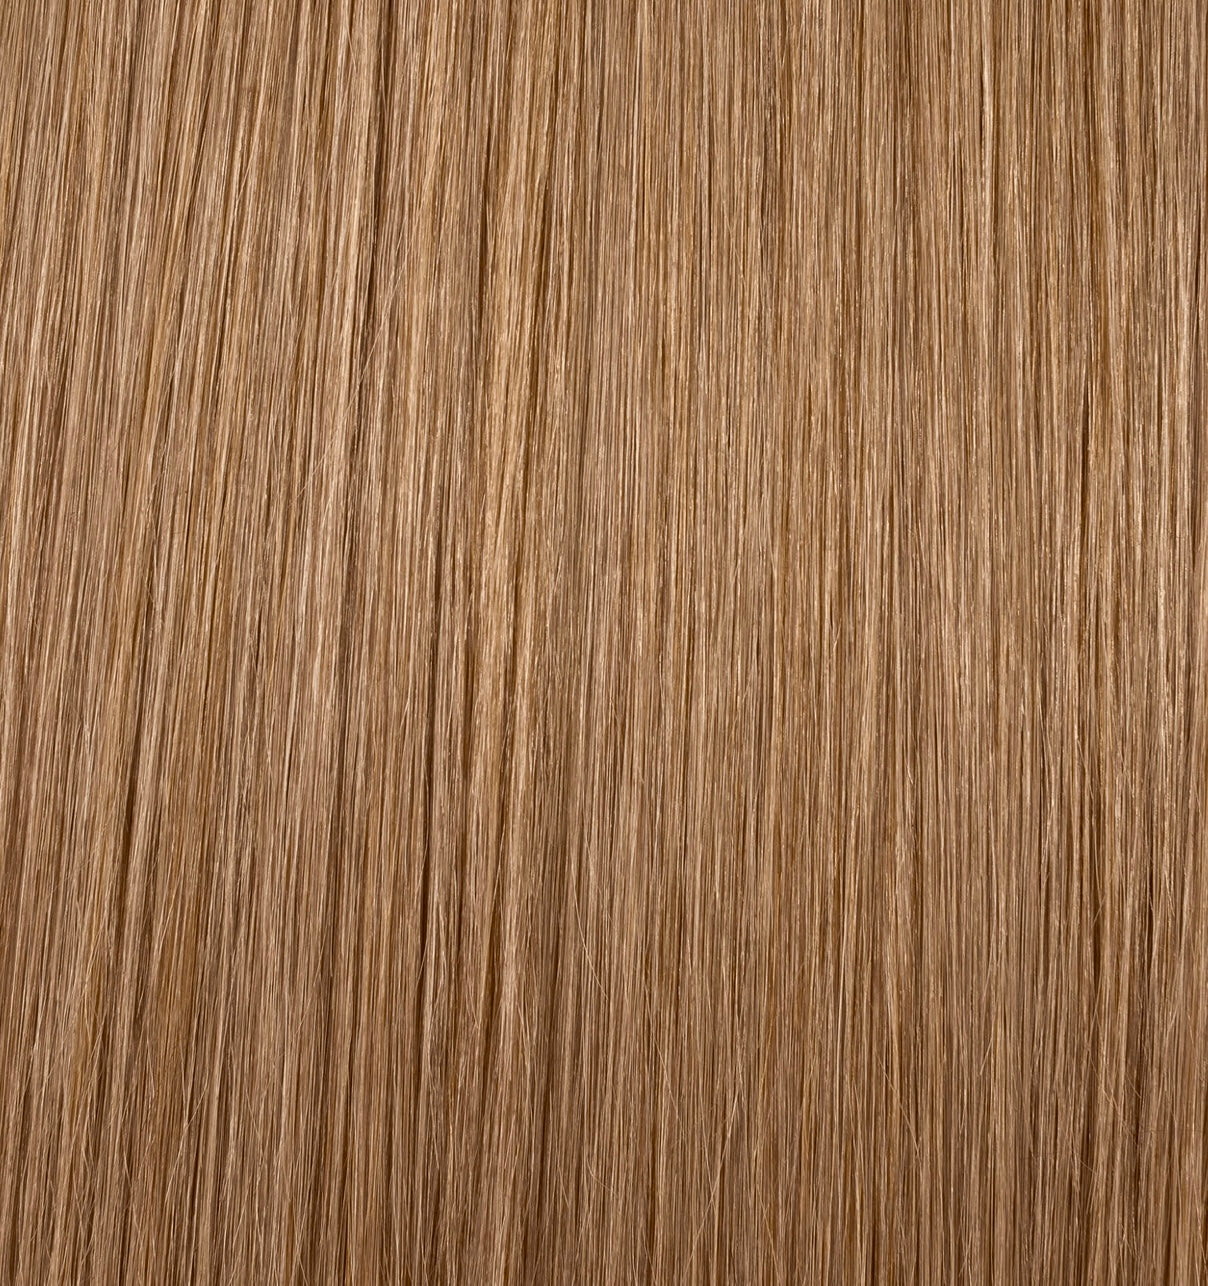 Dark Blonde Straight Human Hair Weft Bundle Extension